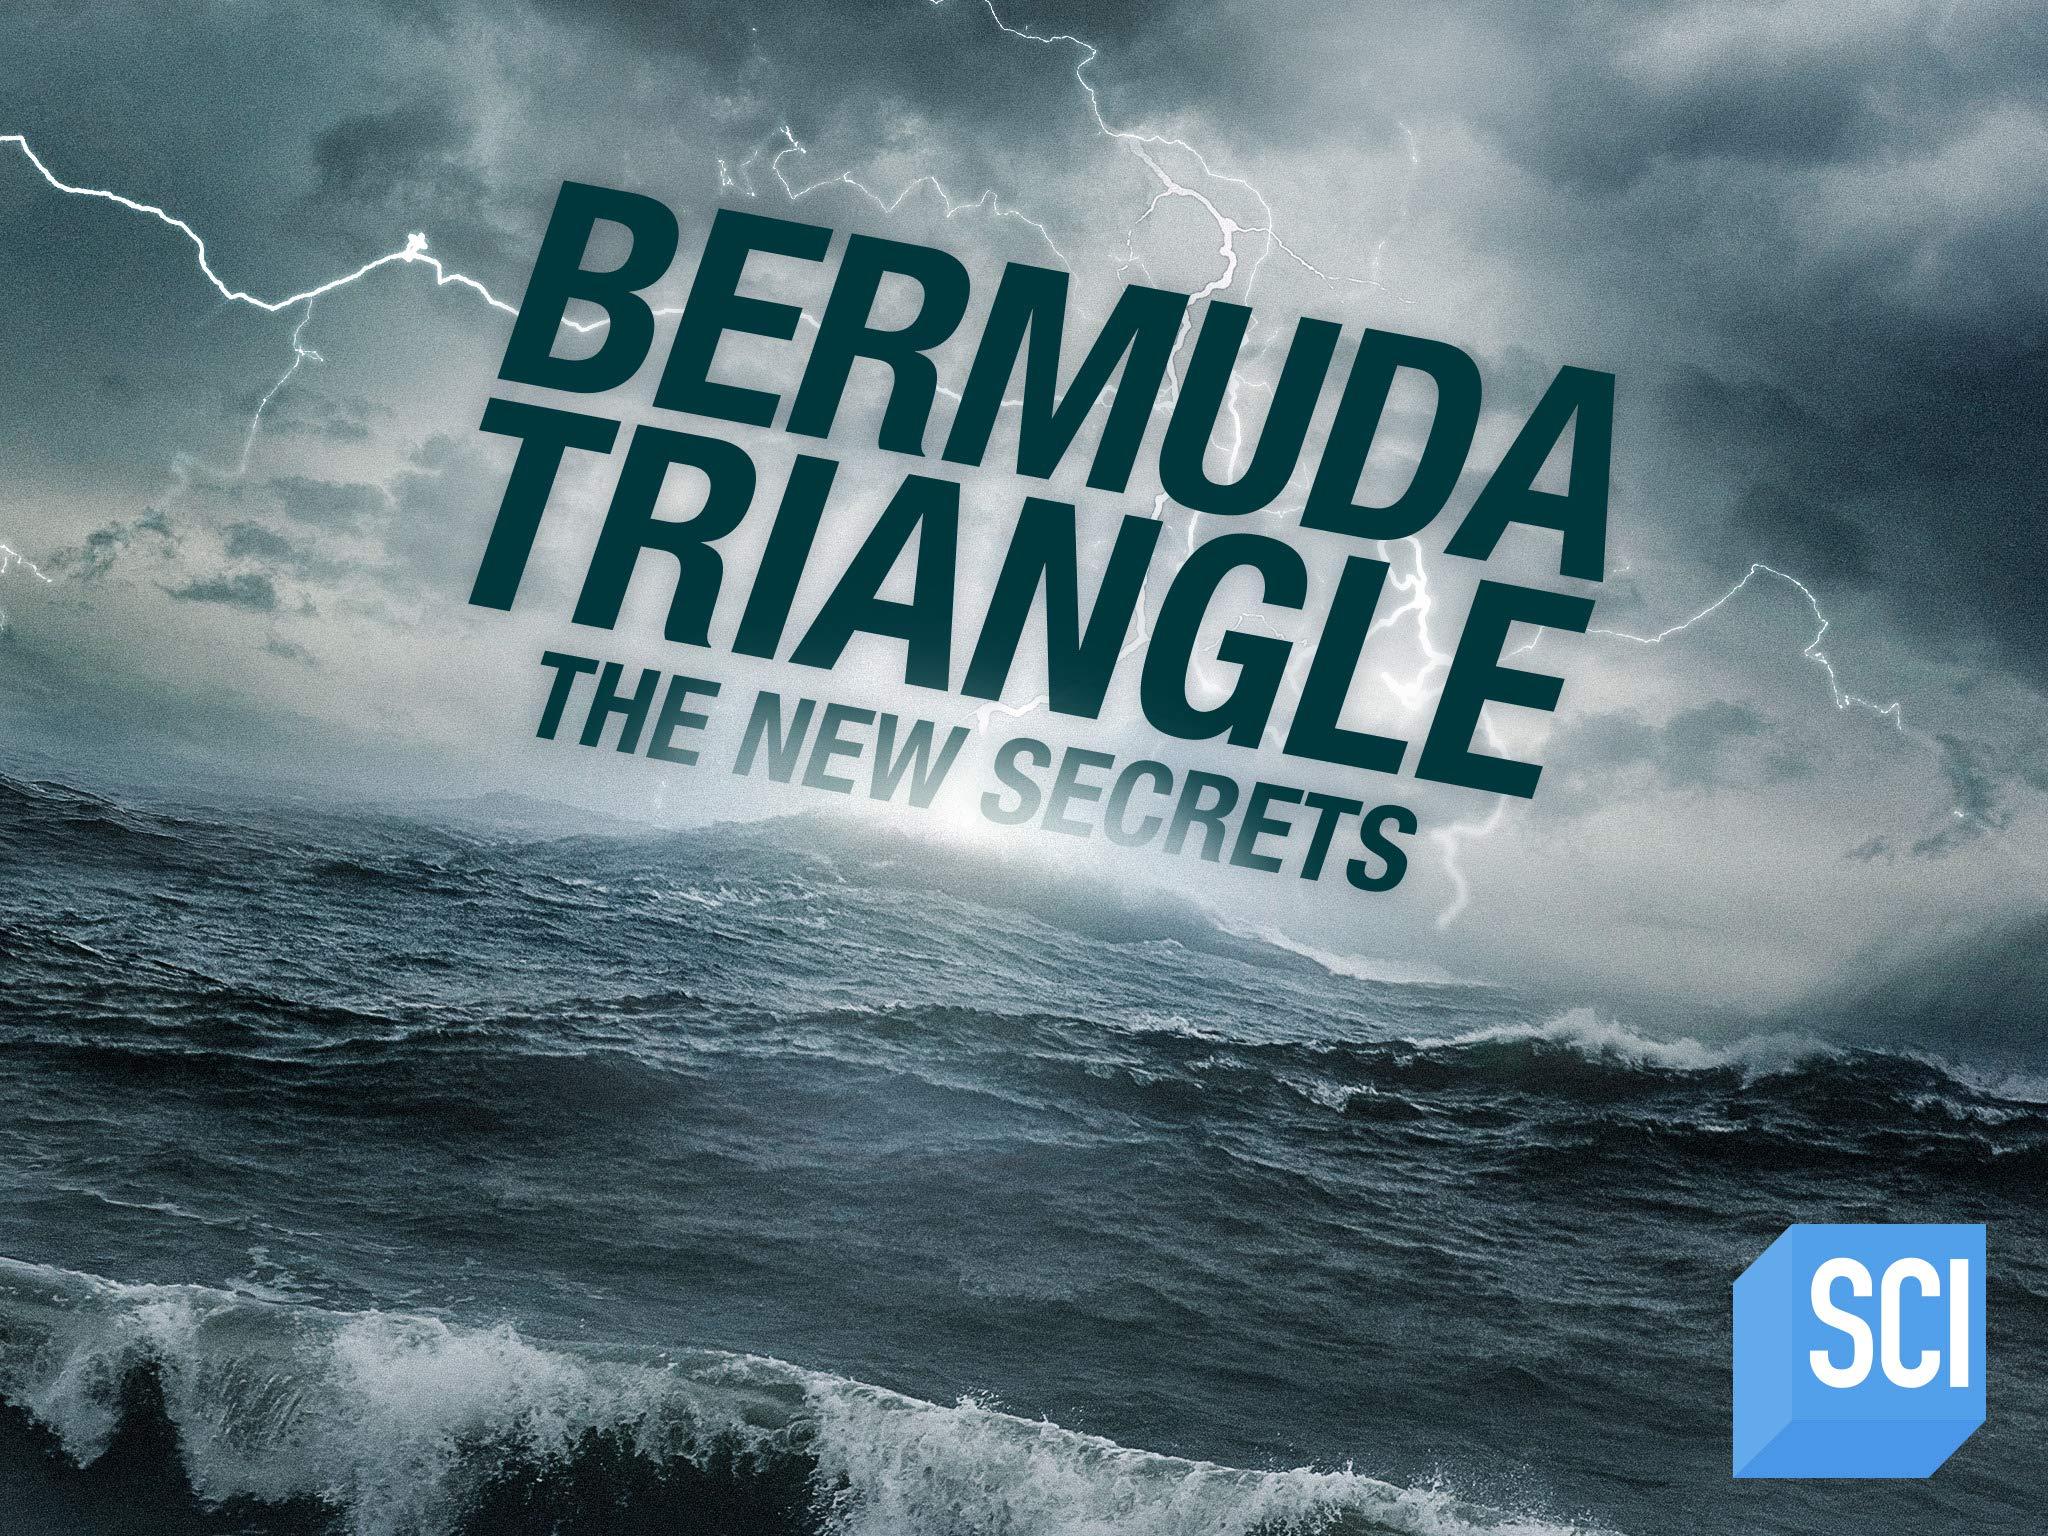 Bermuda Triangle: The New Secrets Season 1. Prime